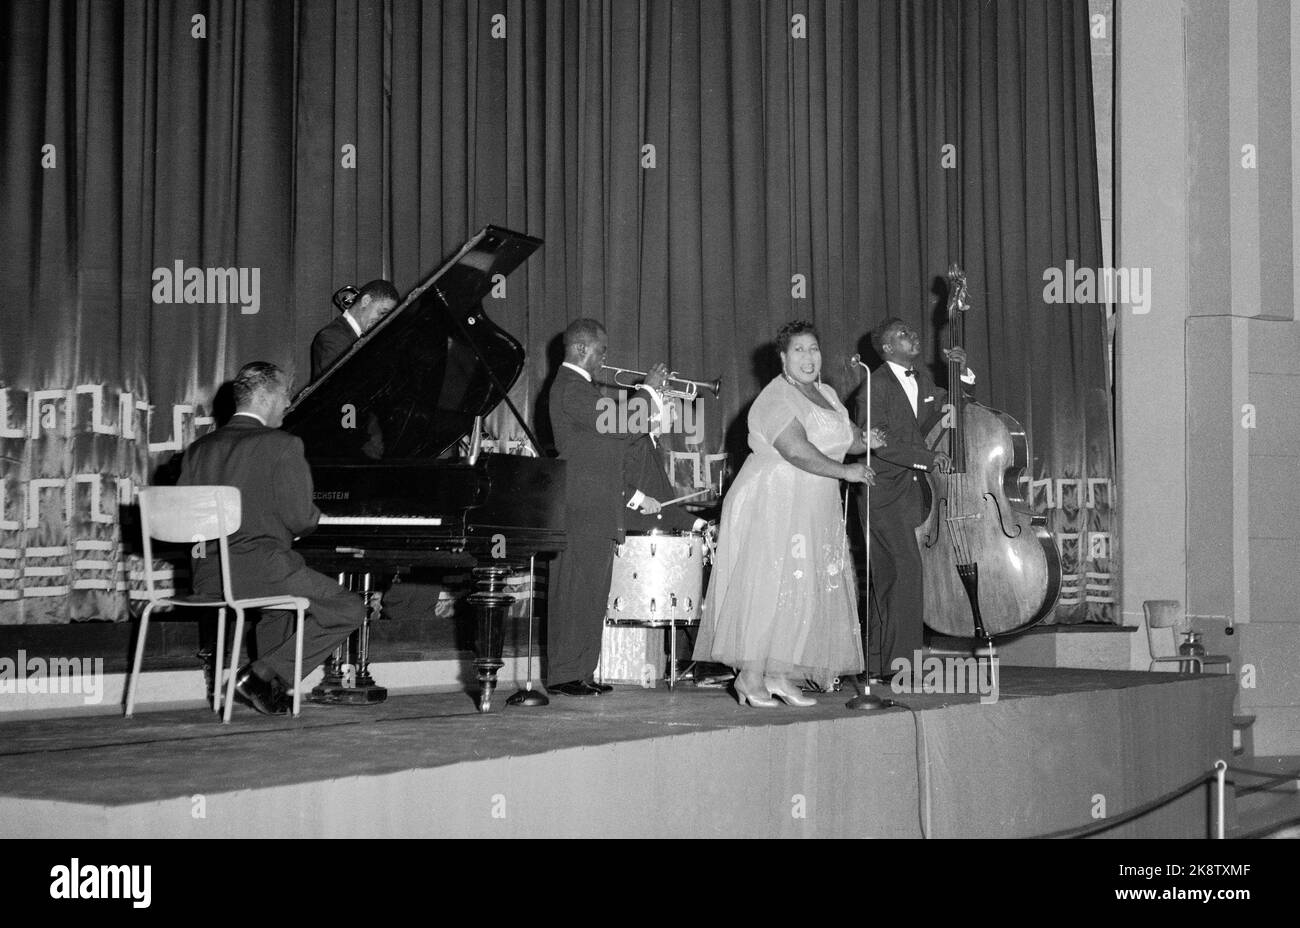 Oslo 1955 octobre : la fièvre du jazz fait rage en Norvège ! Voici l'un des quatre concerts avec le trompettiste Louis Armstrong et son orchestre dans le cinéma du Colisée. Armstrong en action sur la trompette, avec la chanteuse Velma Middleton. Photo: Actuel / NTB Banque D'Images